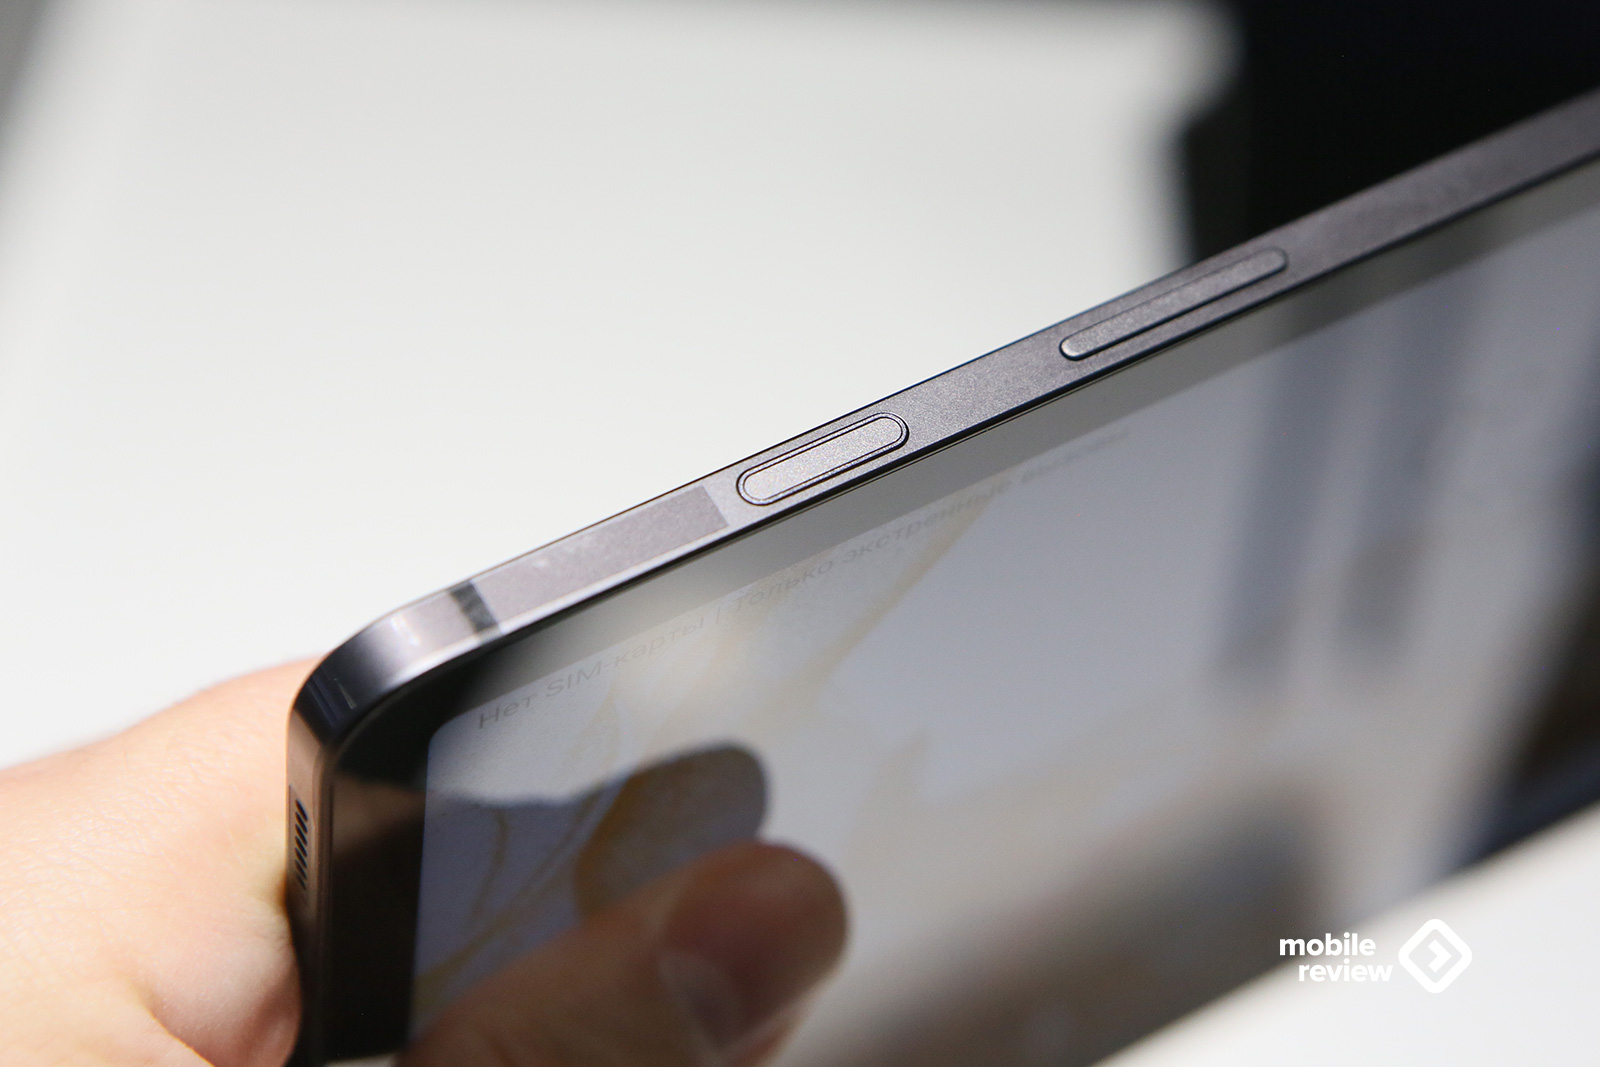 Линейка планшетов Samsung Galaxy Tab S8/S8+ и S8 Ultra — первые впечатления